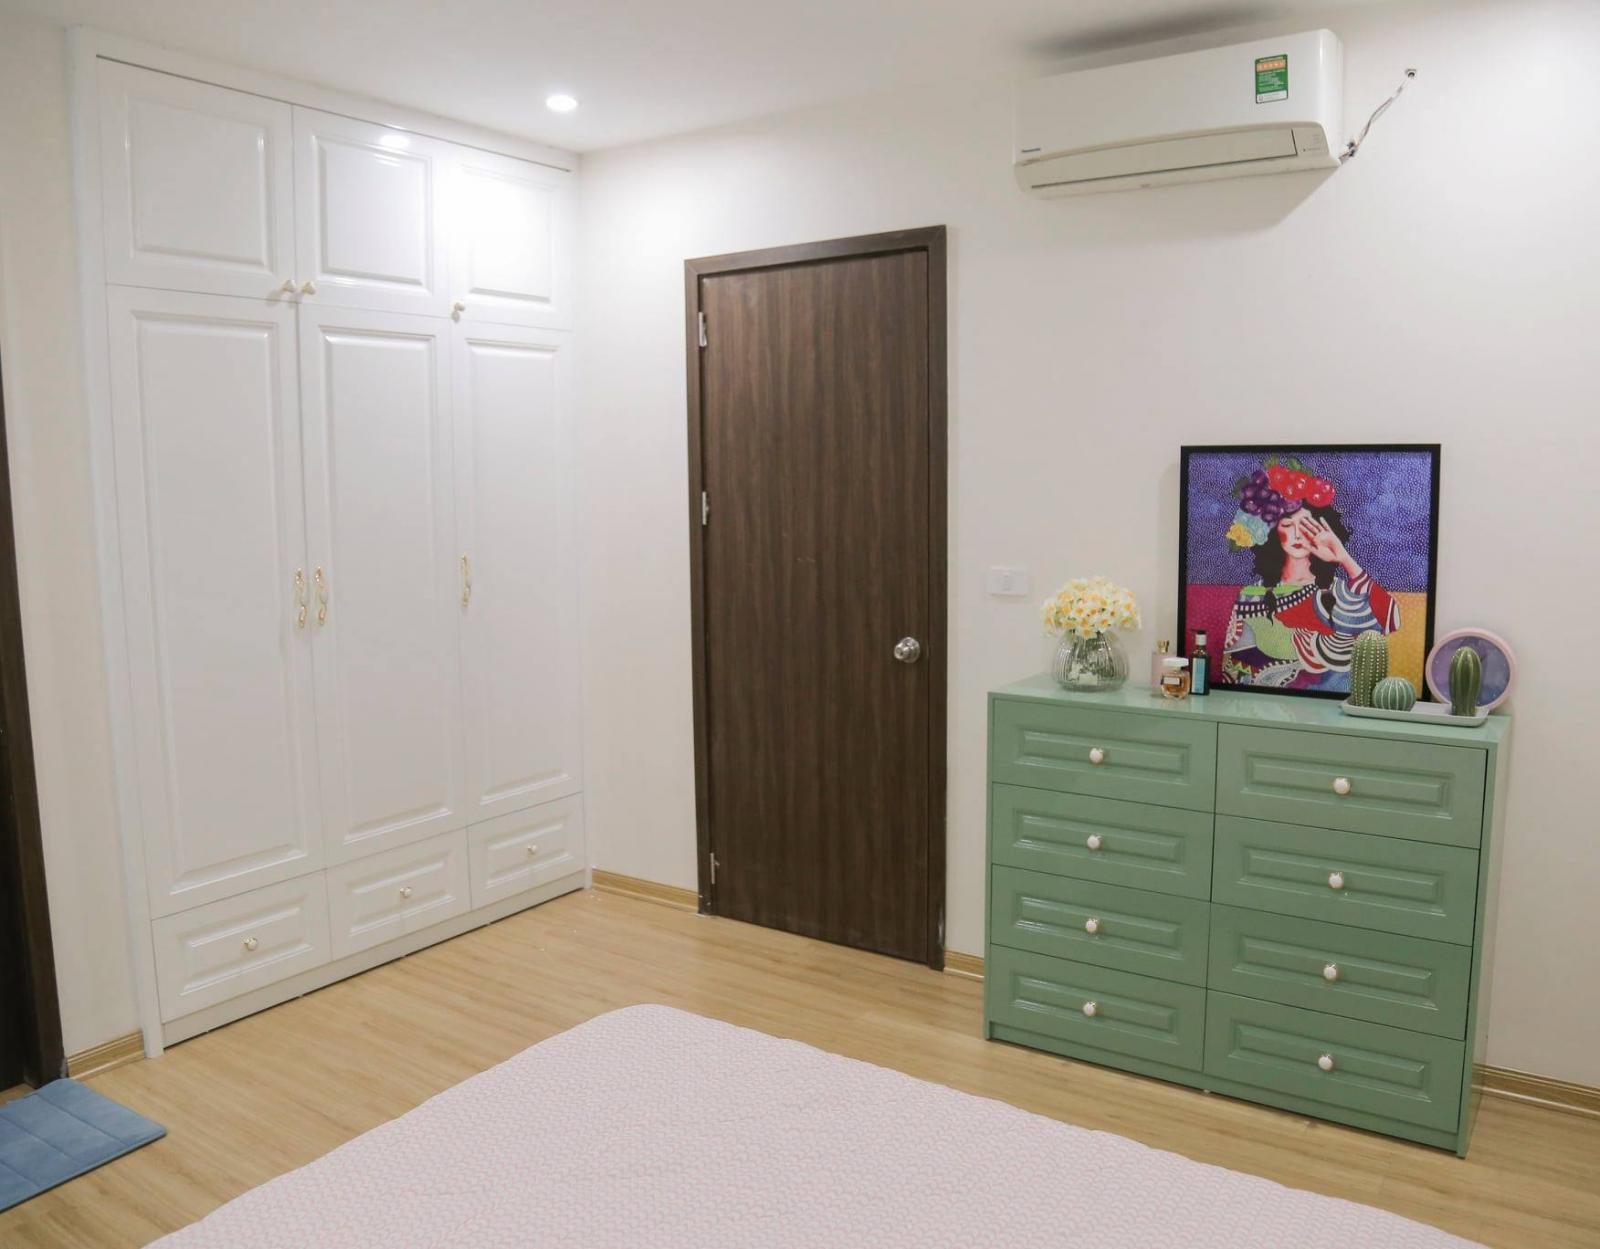 Không gian phòng ngủ có đồ nội thất cơ bản như giường, tủ quần áo.